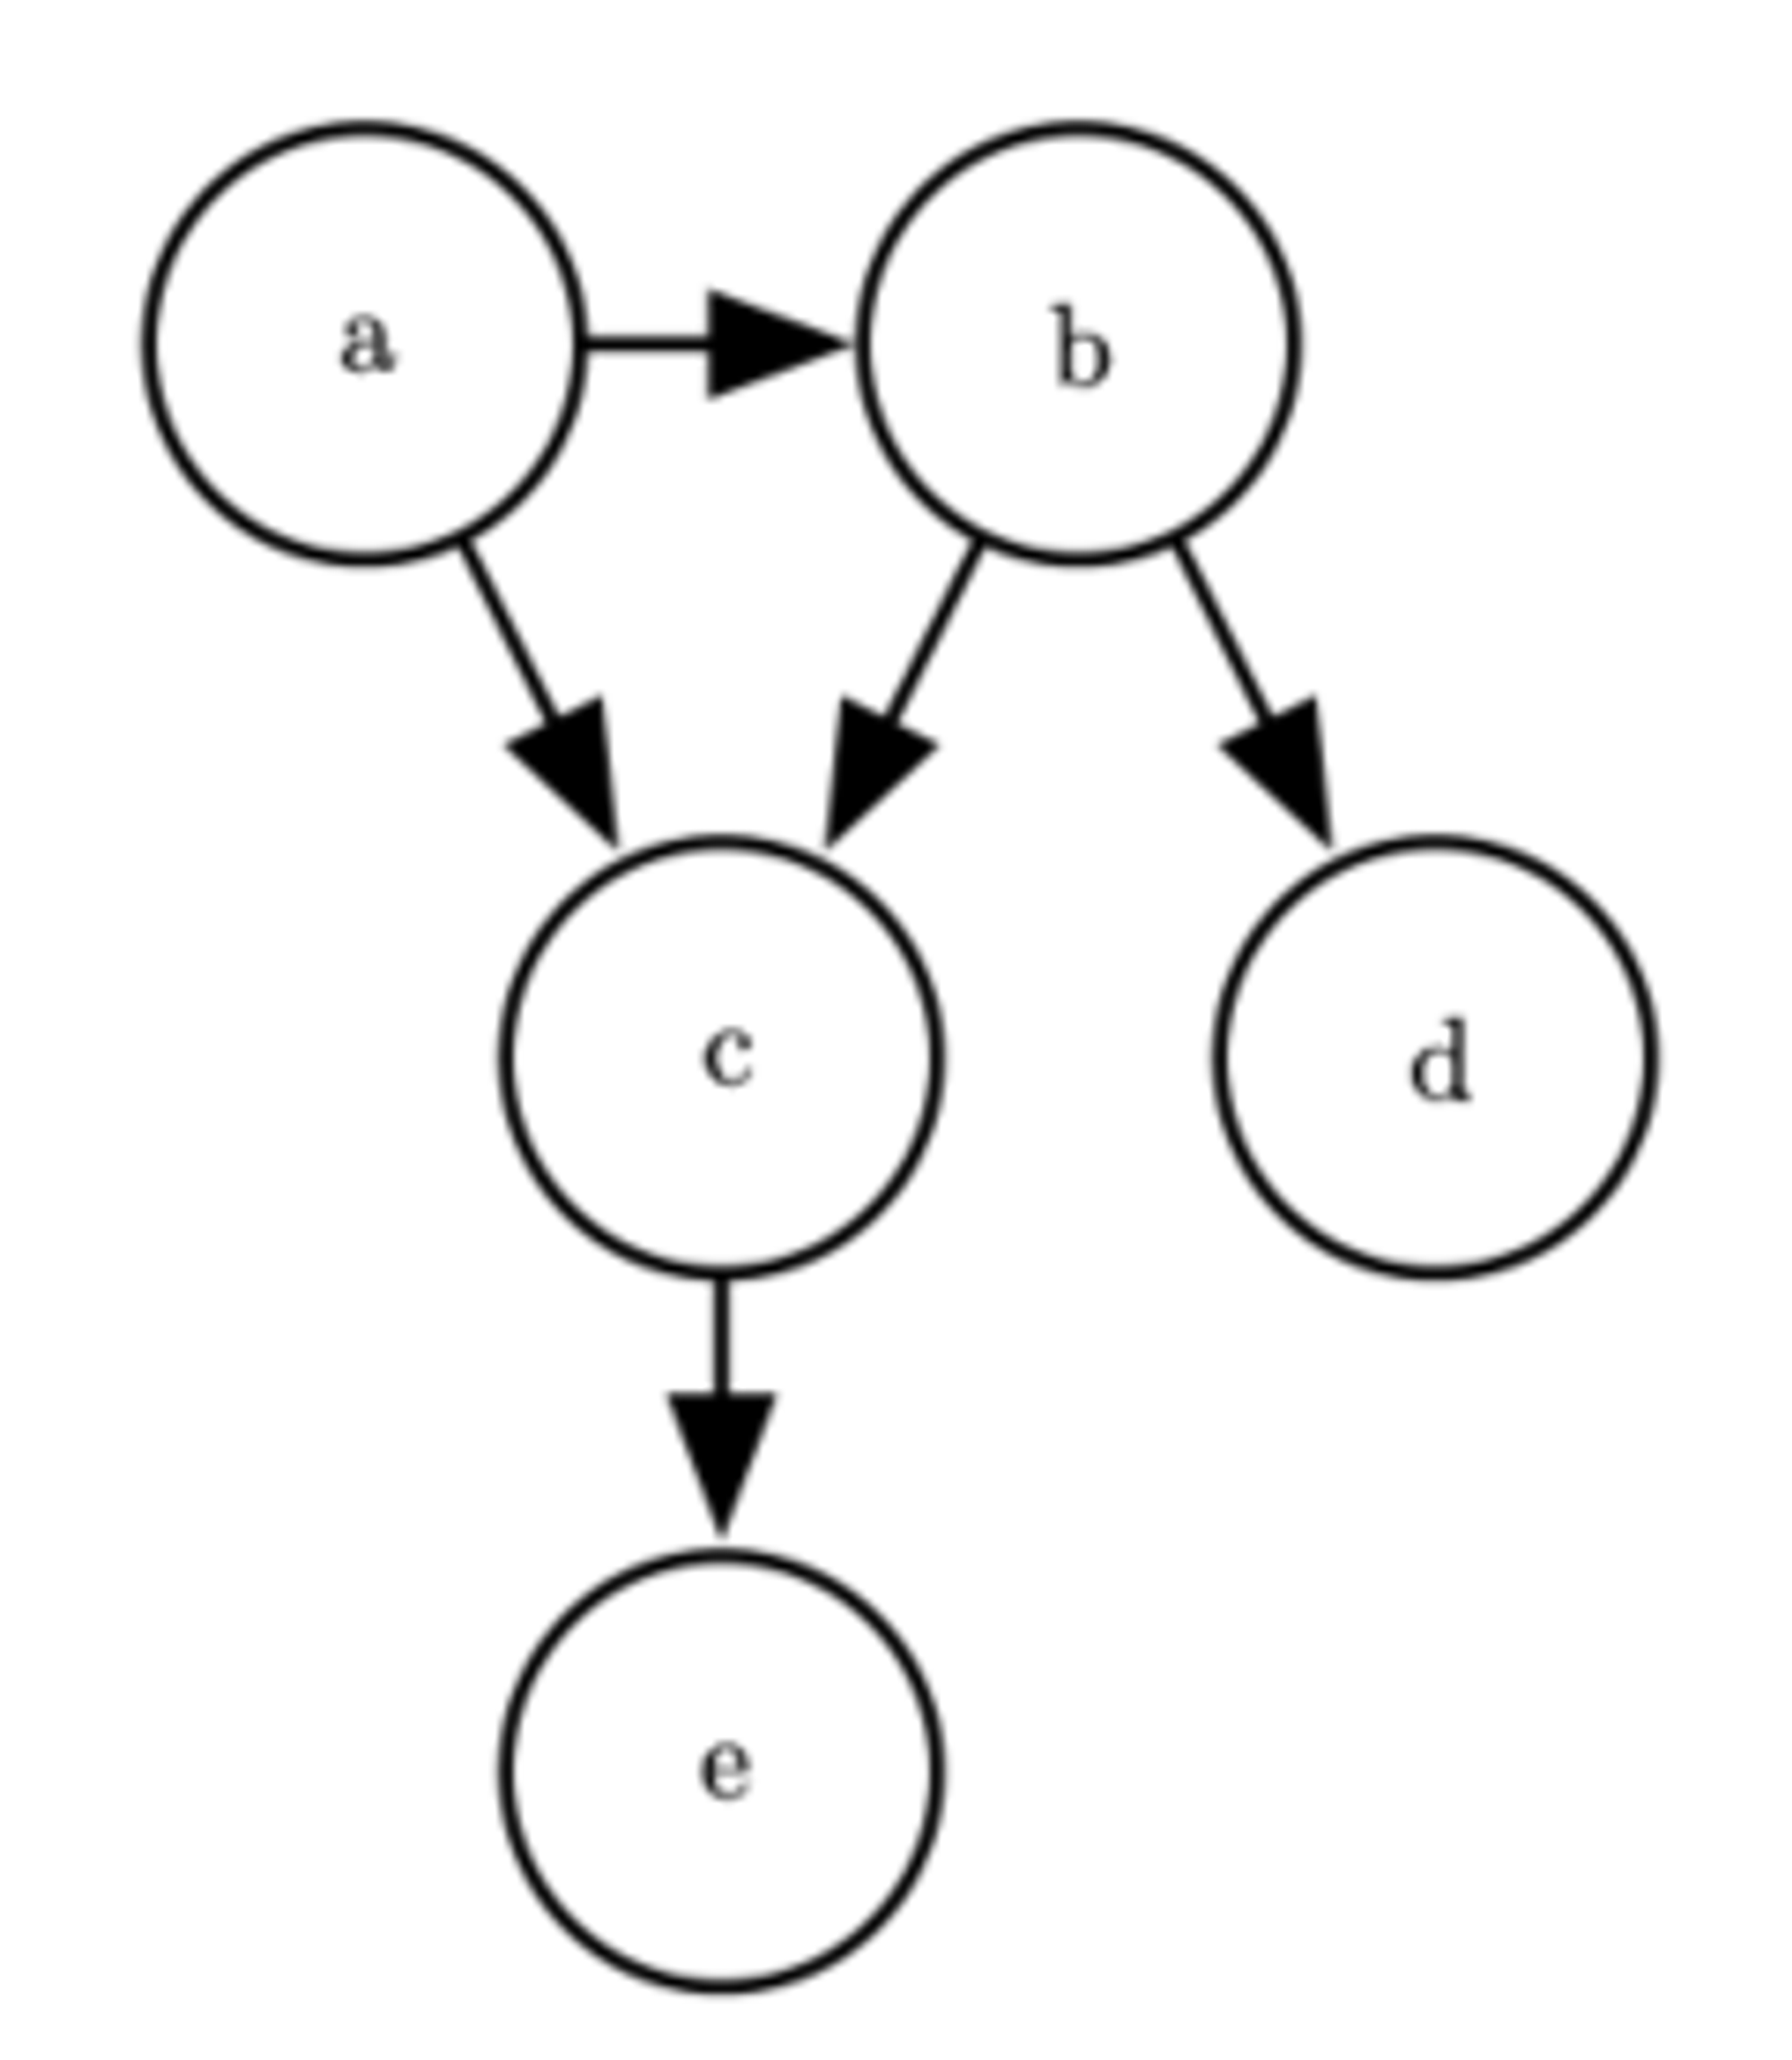 关于随机变量 a,b,c,d 和 e 的有向图模型。